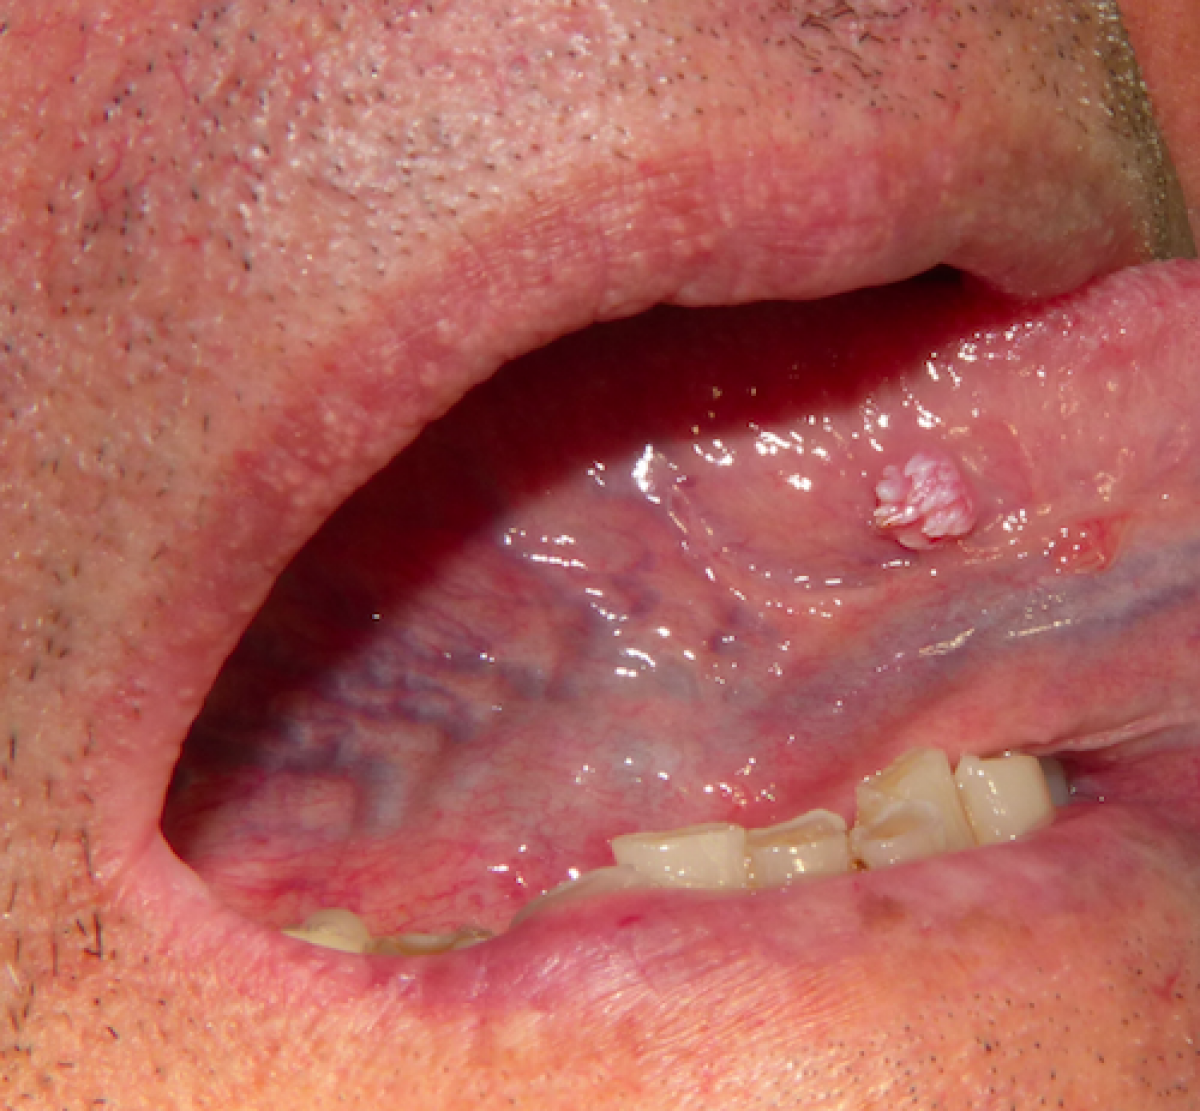 Papilloma under the tongue. Excision of Tongue Papilloma papillomas deer